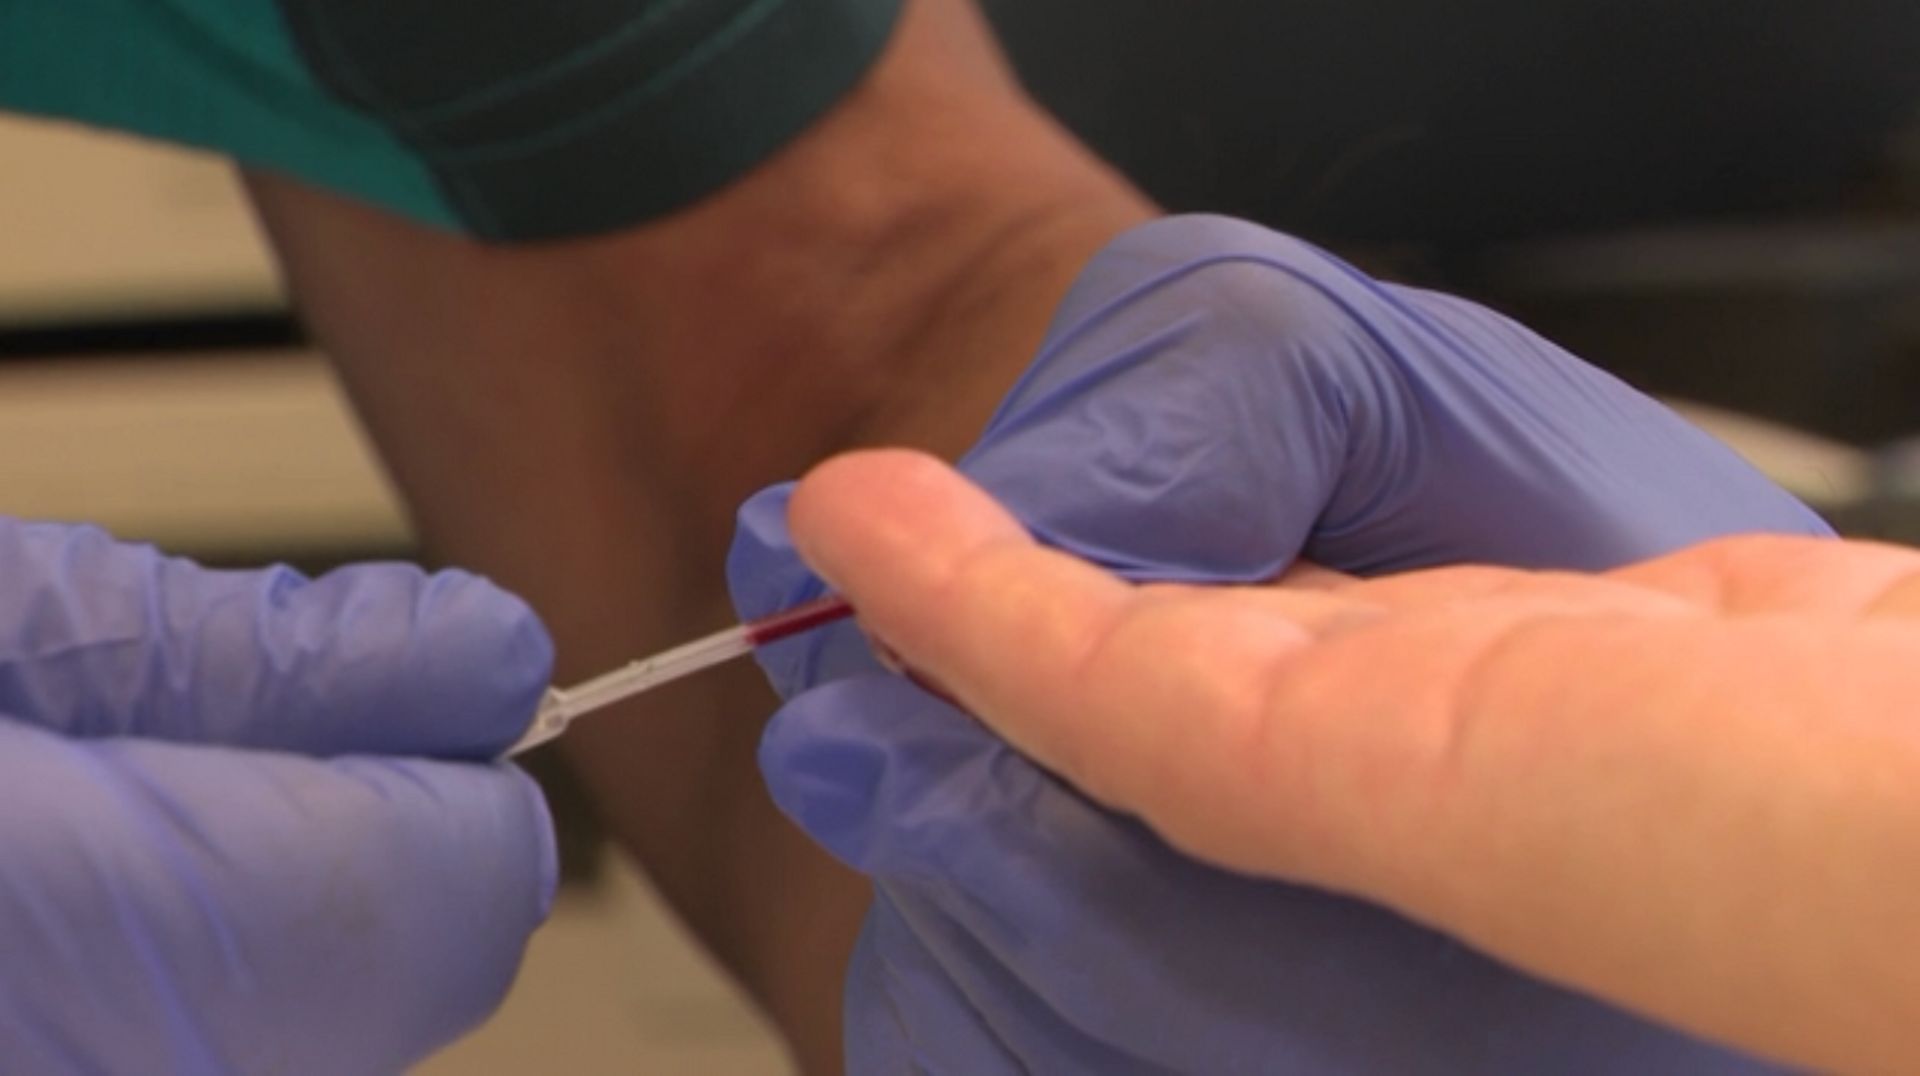 Le test de dépistage rapide se fait par le prélèvement d'un goutte de sang sur le doigt.